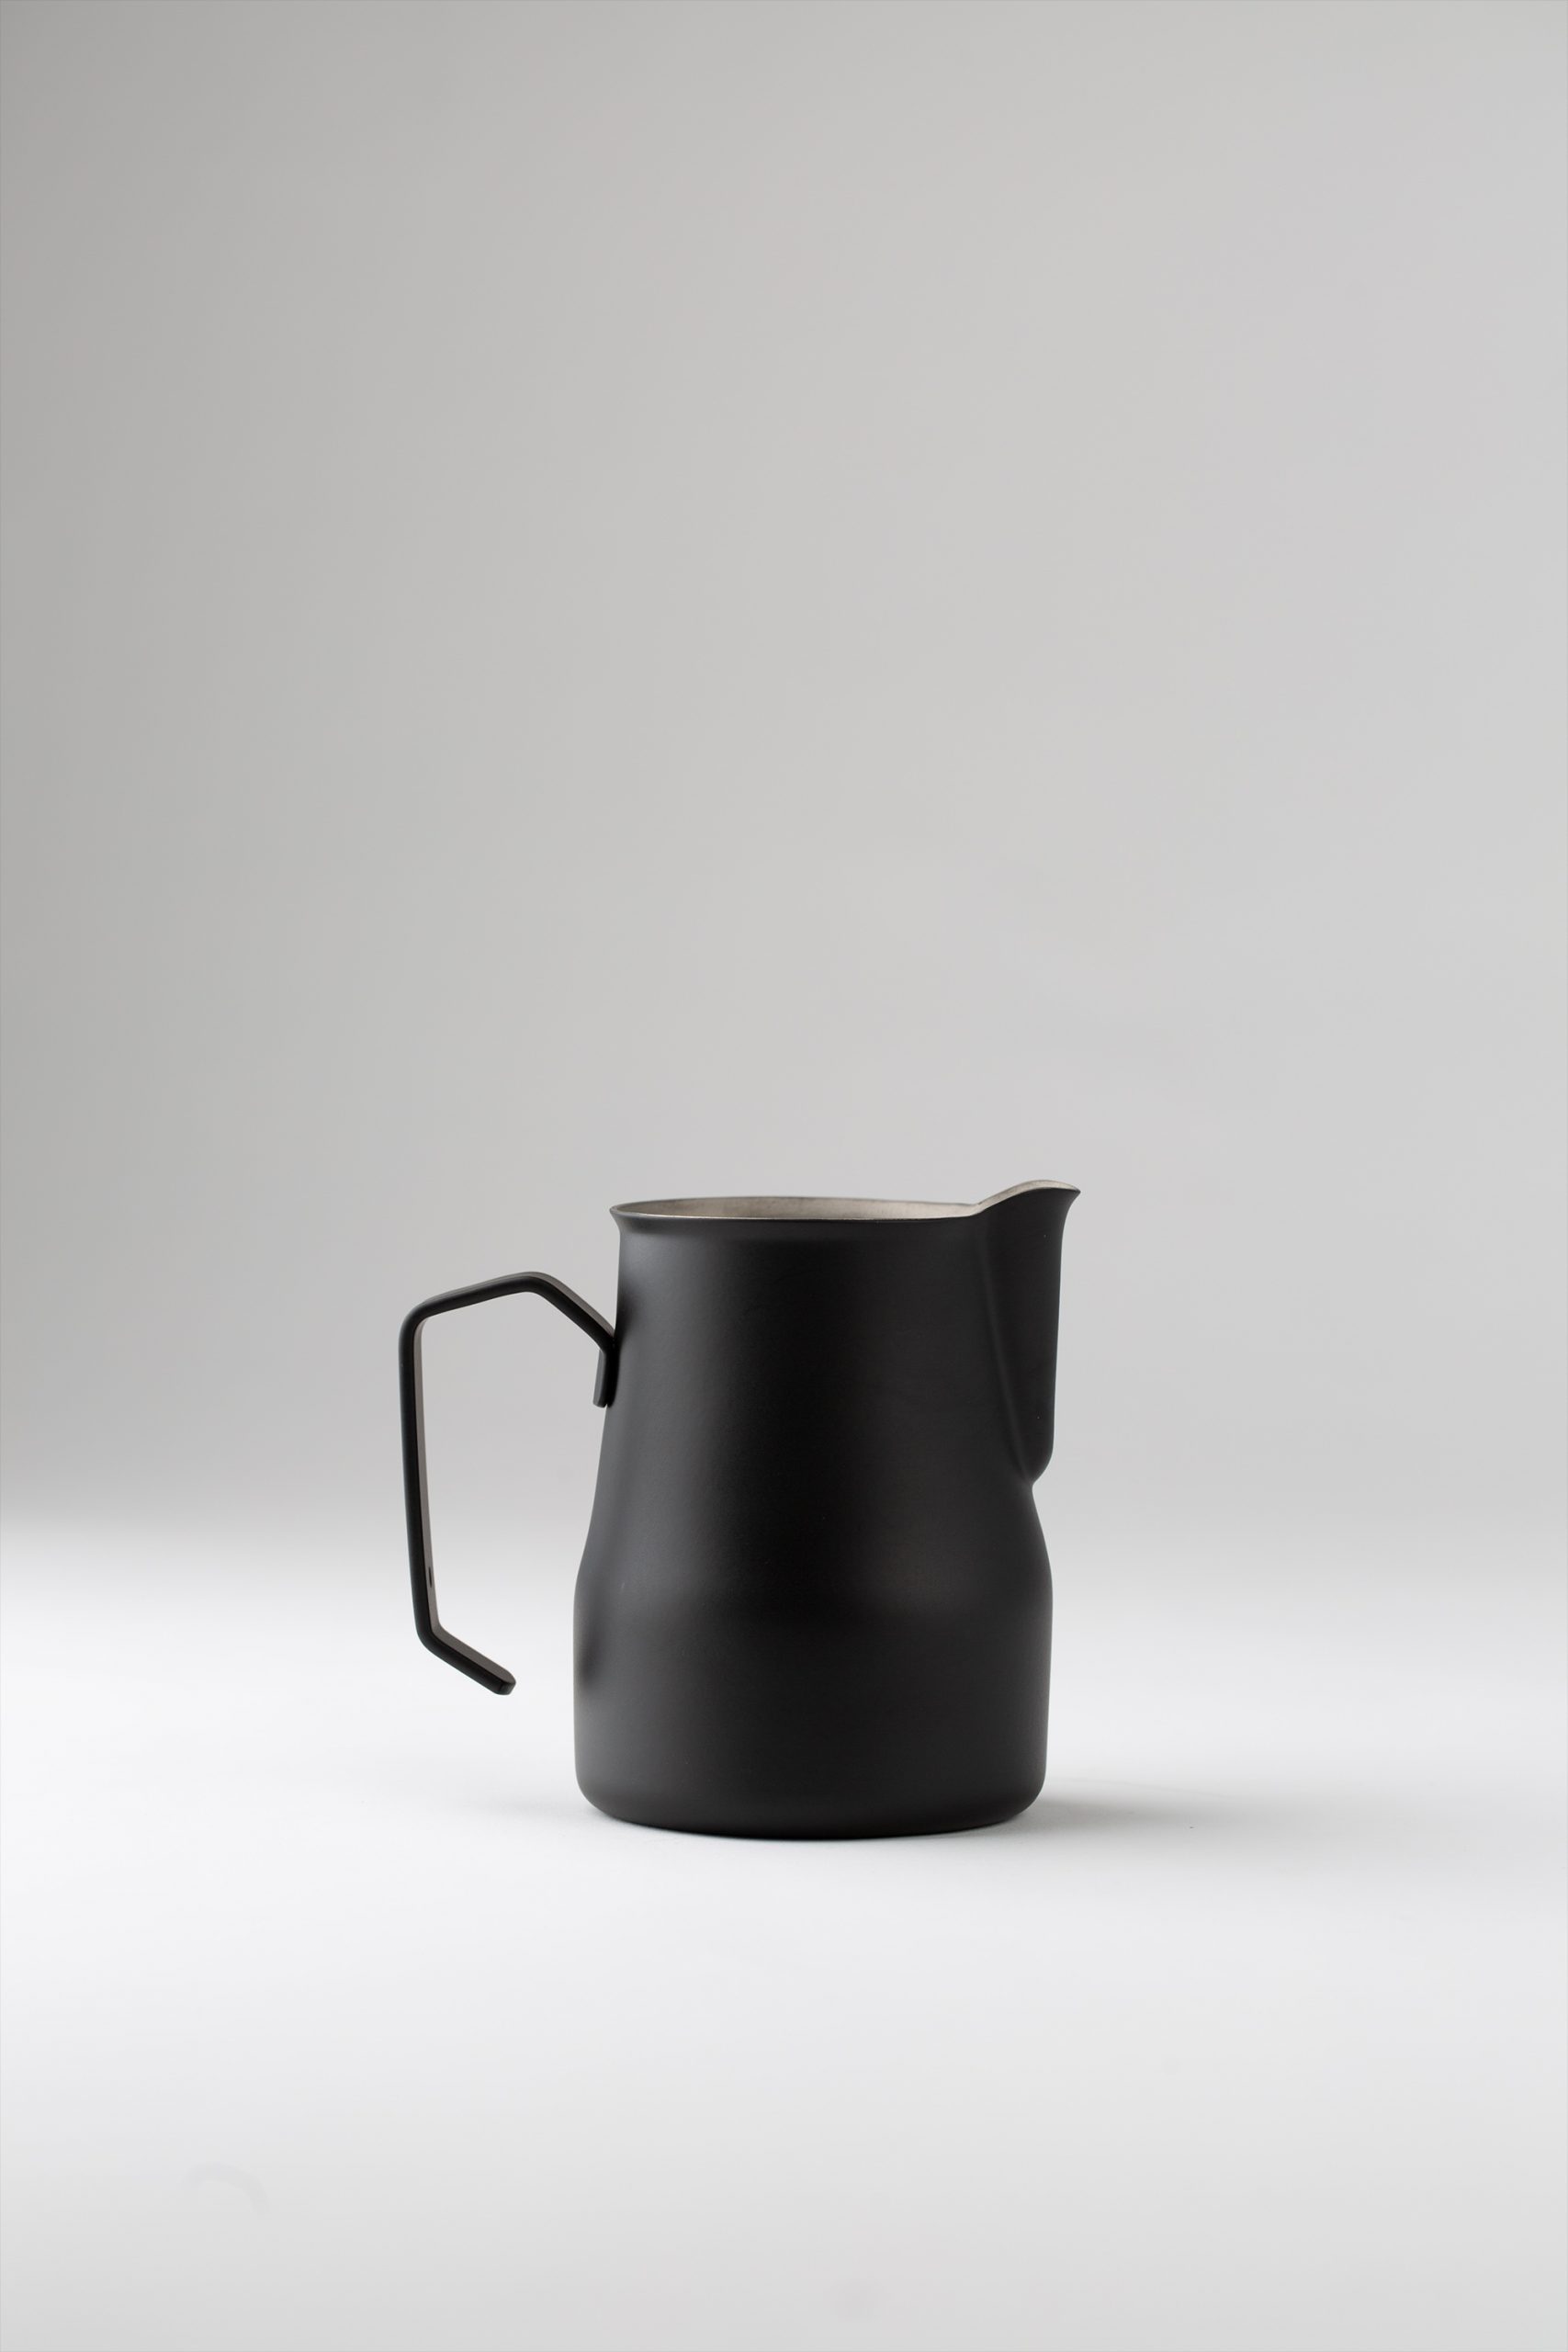 product-coffee-milk-jug